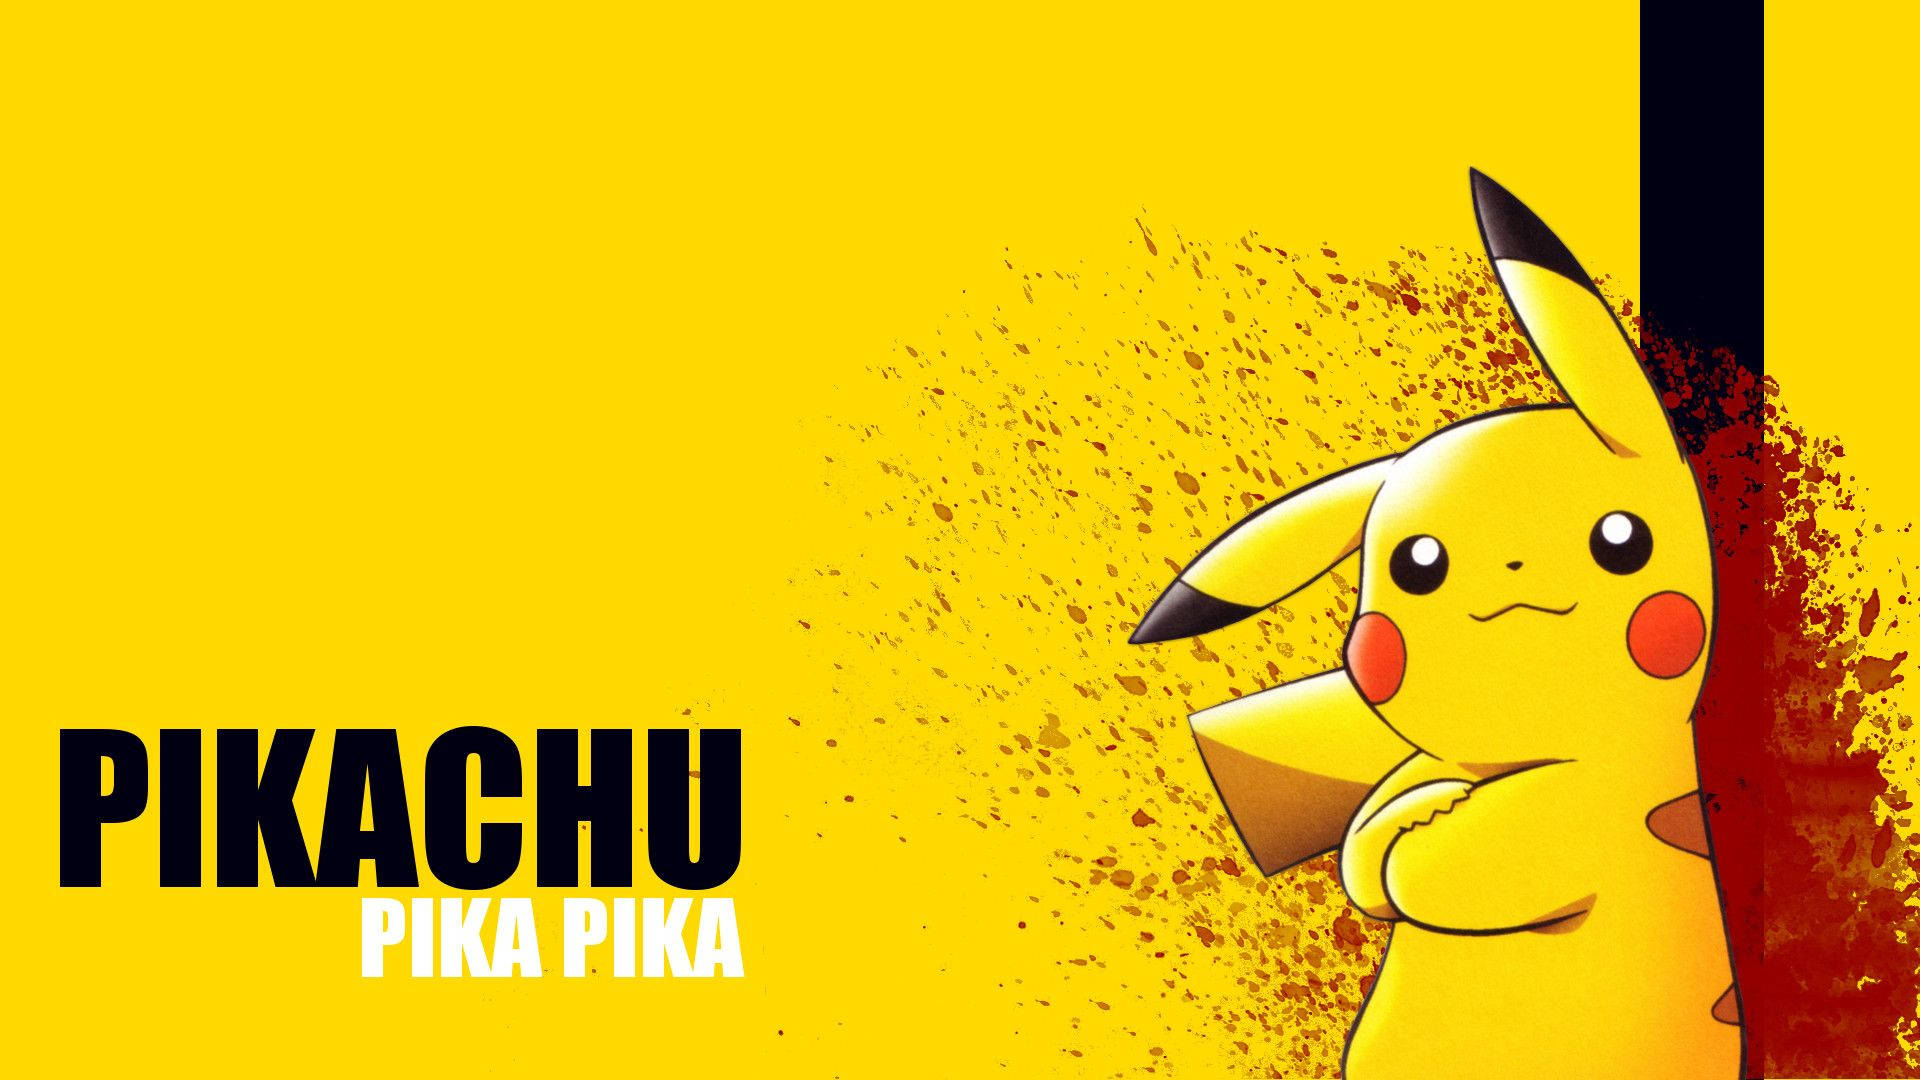 Pikachu 3d Original Pokémon Wallpaper